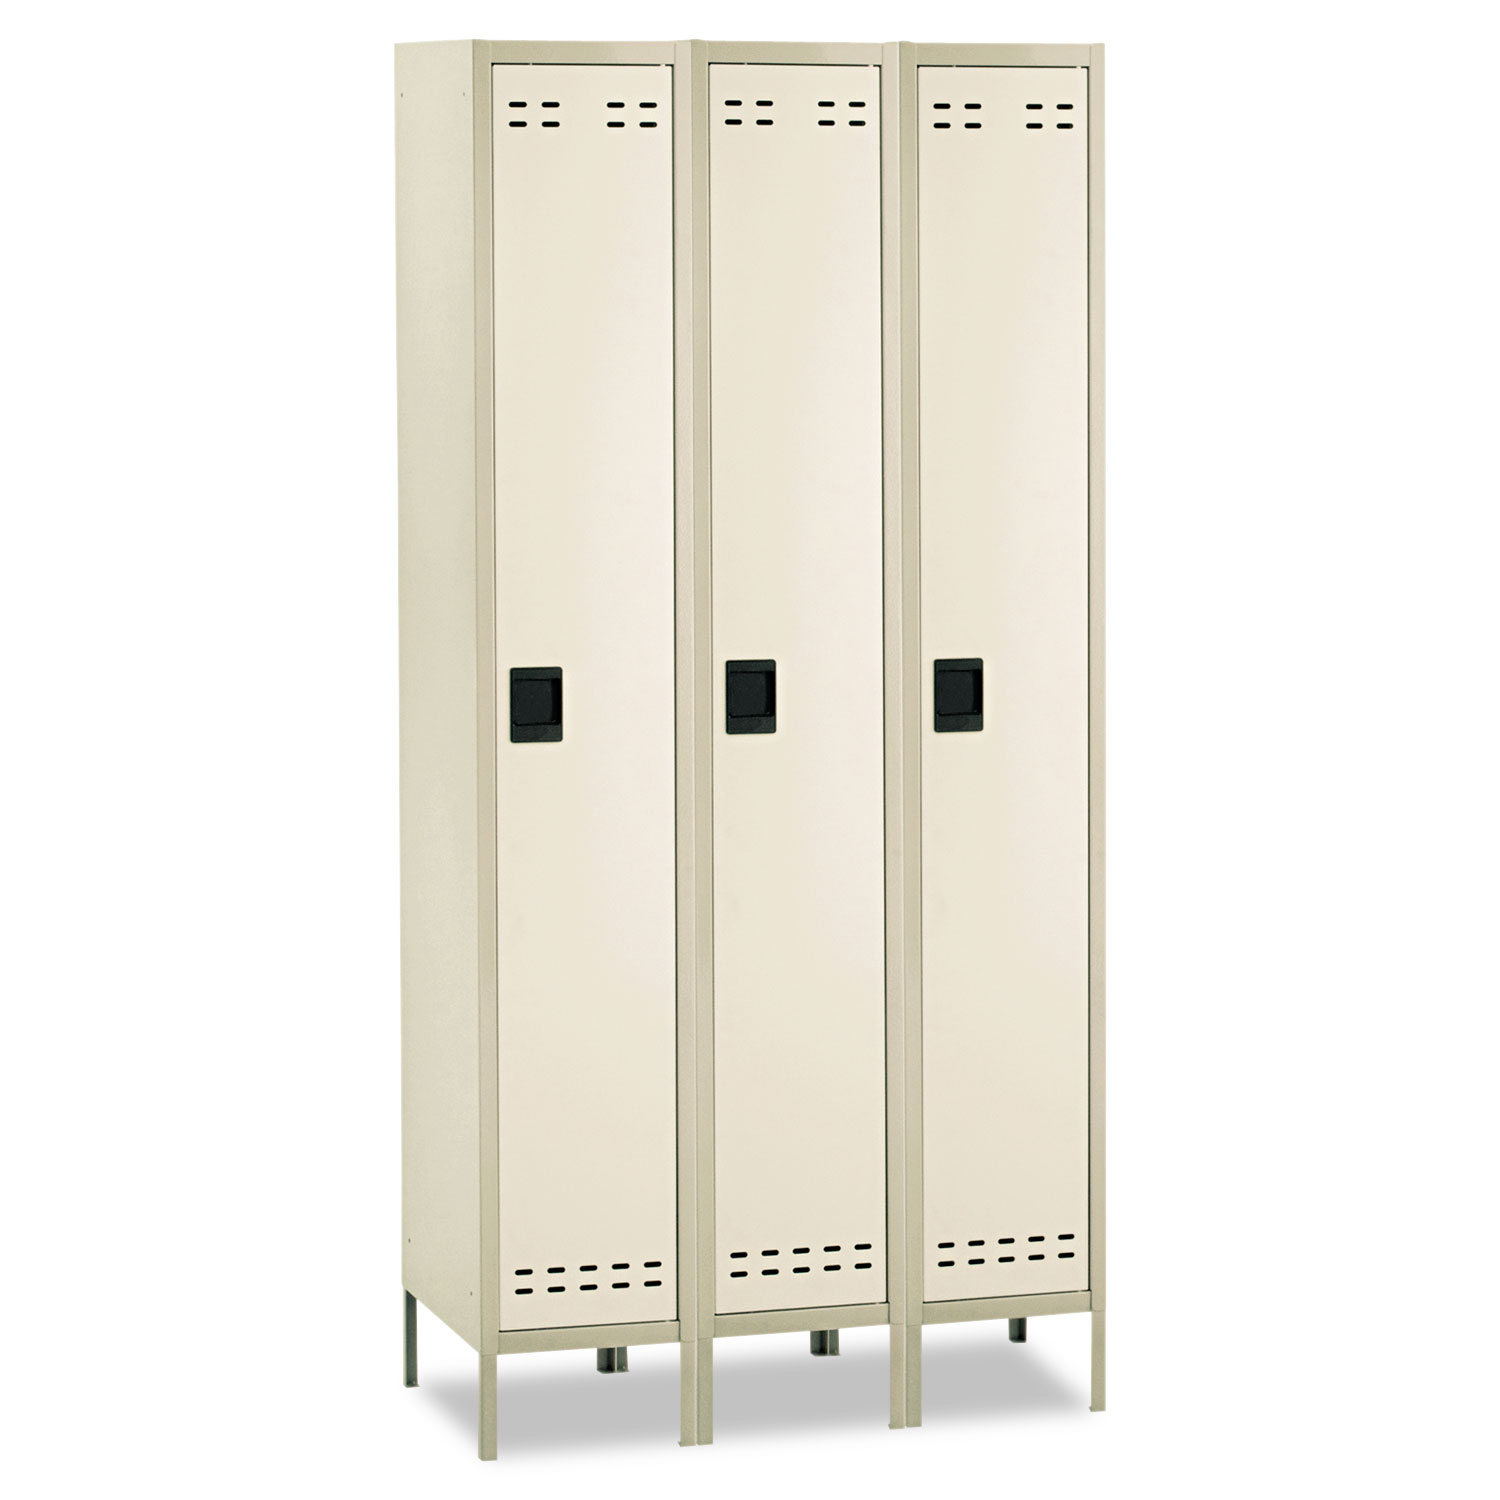  Safco 5525TN Single-Tier, Three-Column Locker, 36w x 18d x 78h, Two-Tone Tan (SAF5525TN) 